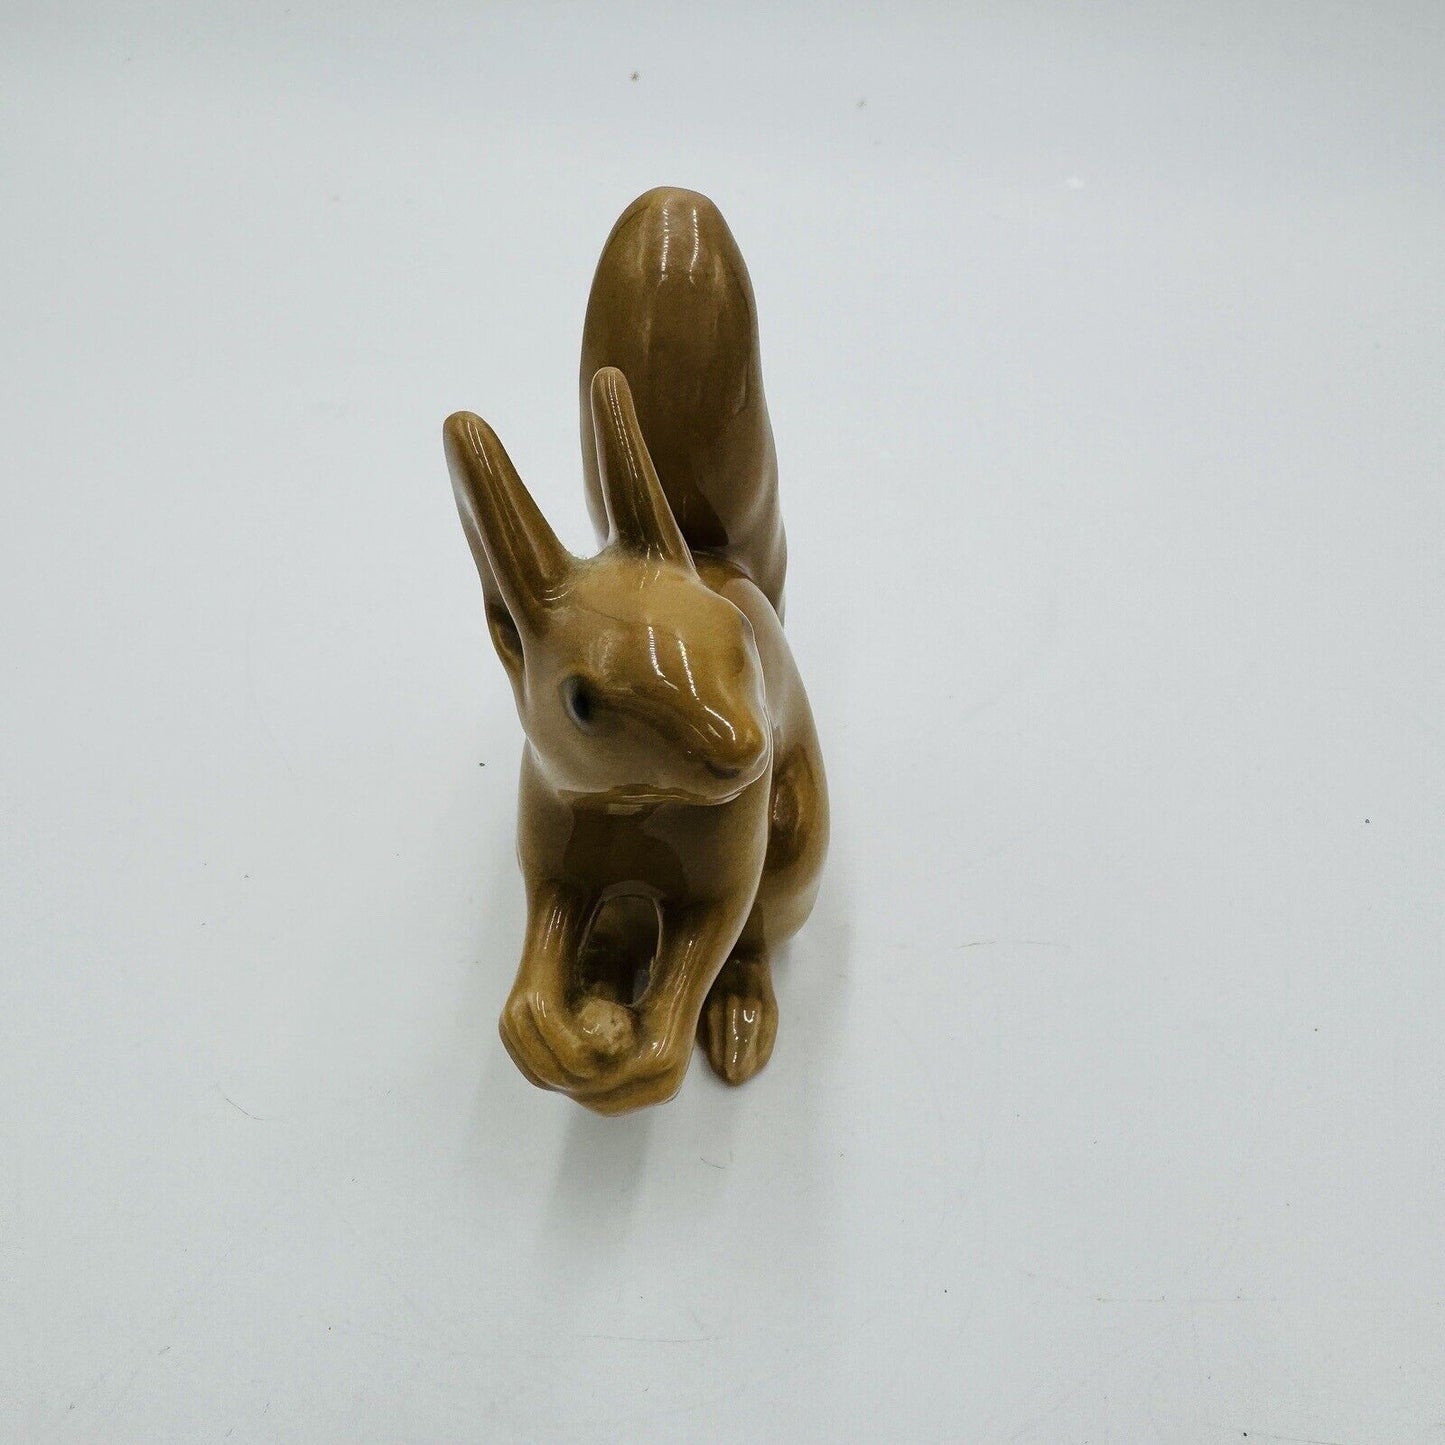 Vintage Bing & Grondahl Porcelain Squirrel Figurine #2177 by Svend Jespersen